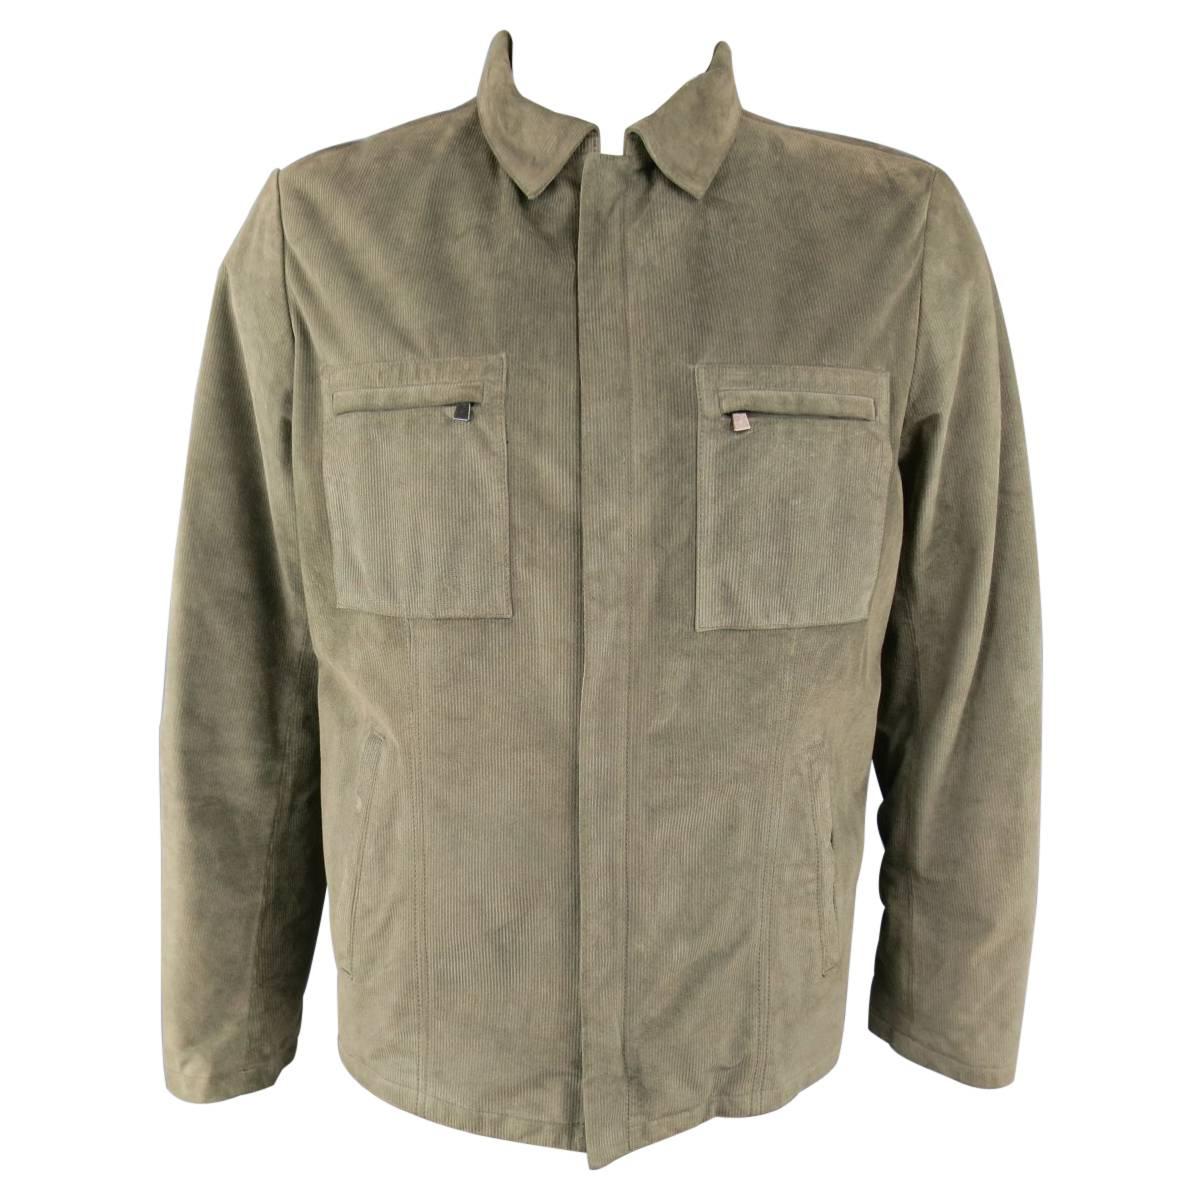 Men's LUCIANO BARBERA 44 Moss Green Corduroy Textured Suede Jacket